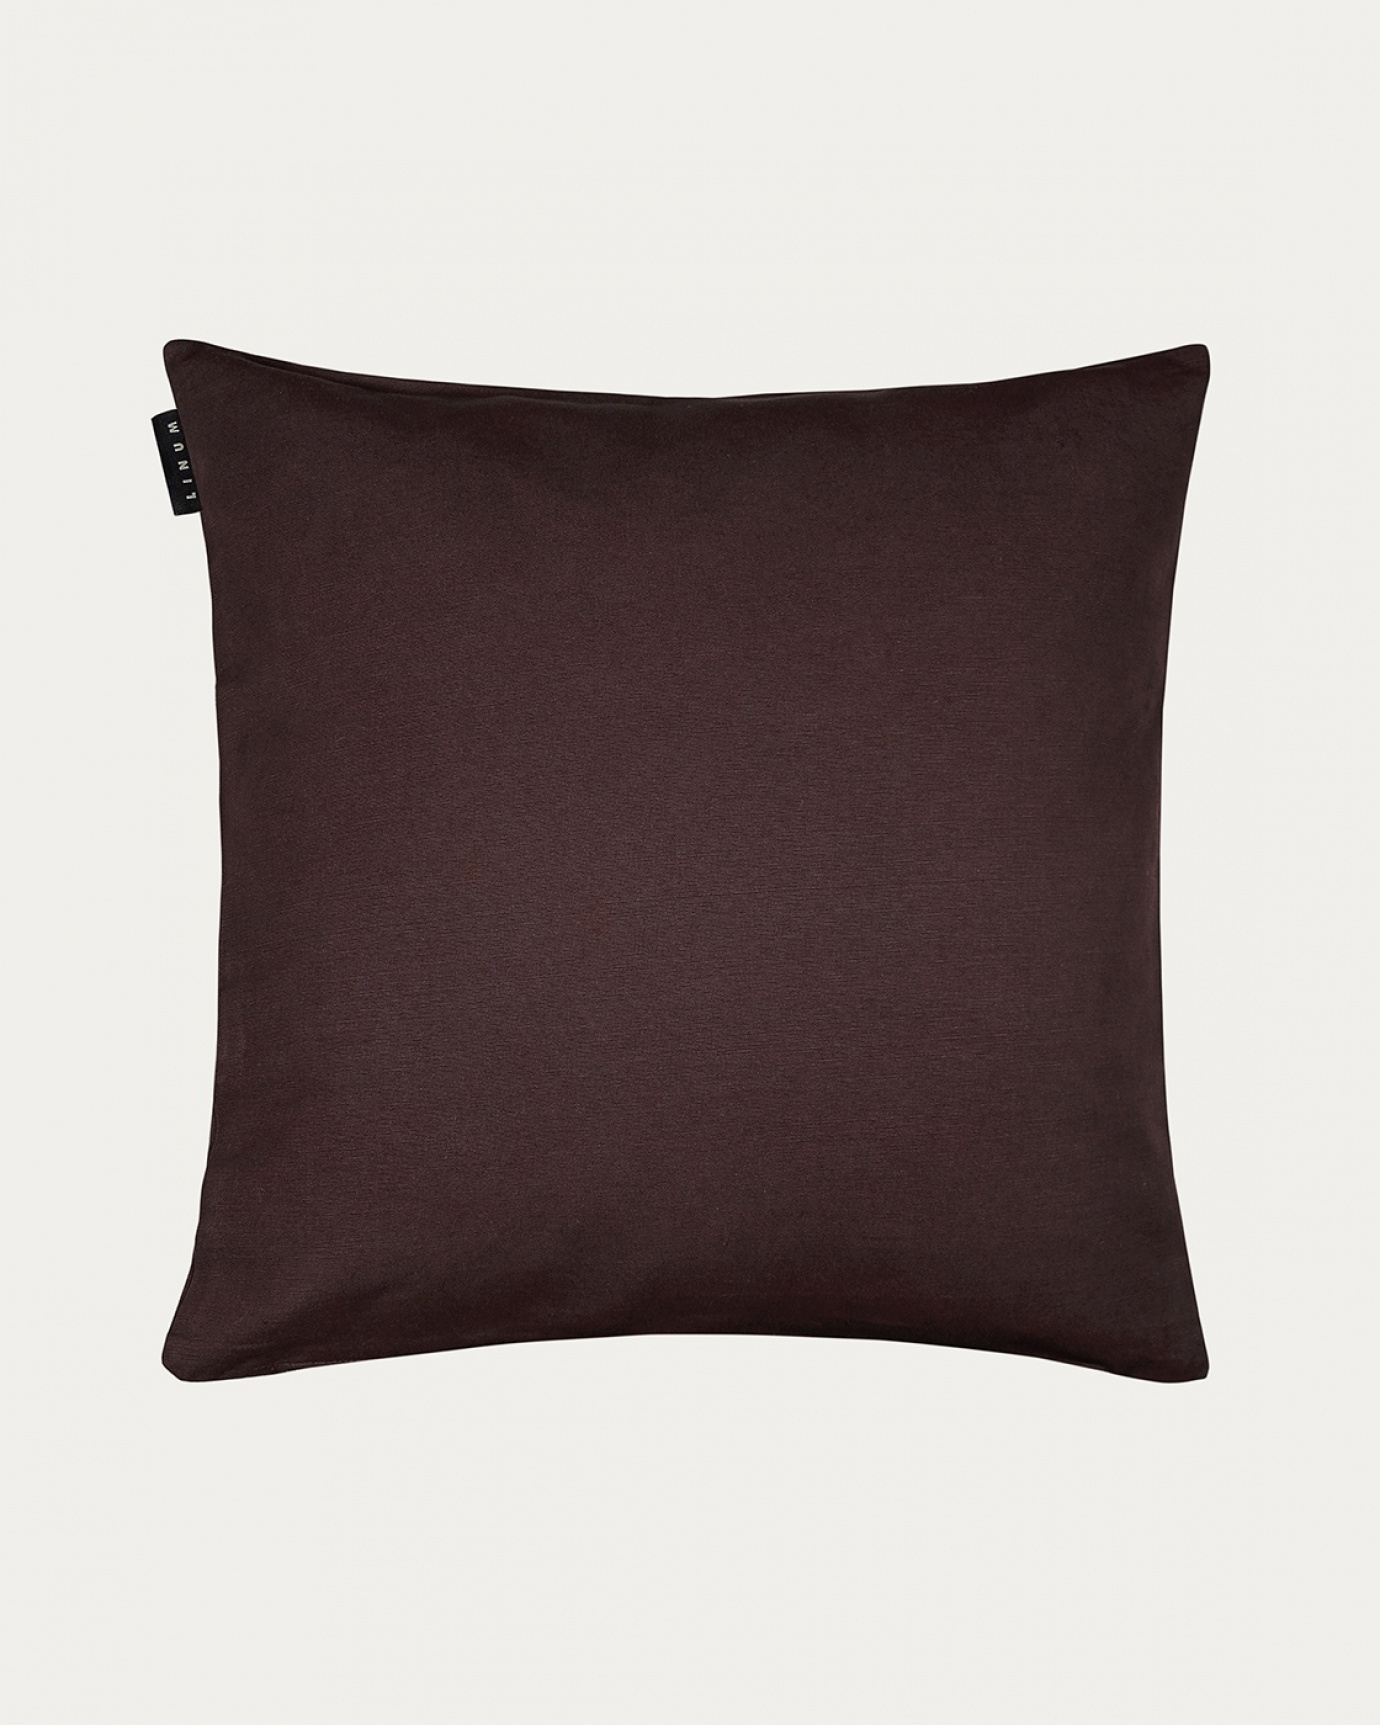 Immagine prodotto marrone scuro ANNABELL copricuscini in morbido cotone di LINUM DESIGN. Dimensioni 50x50 cm.